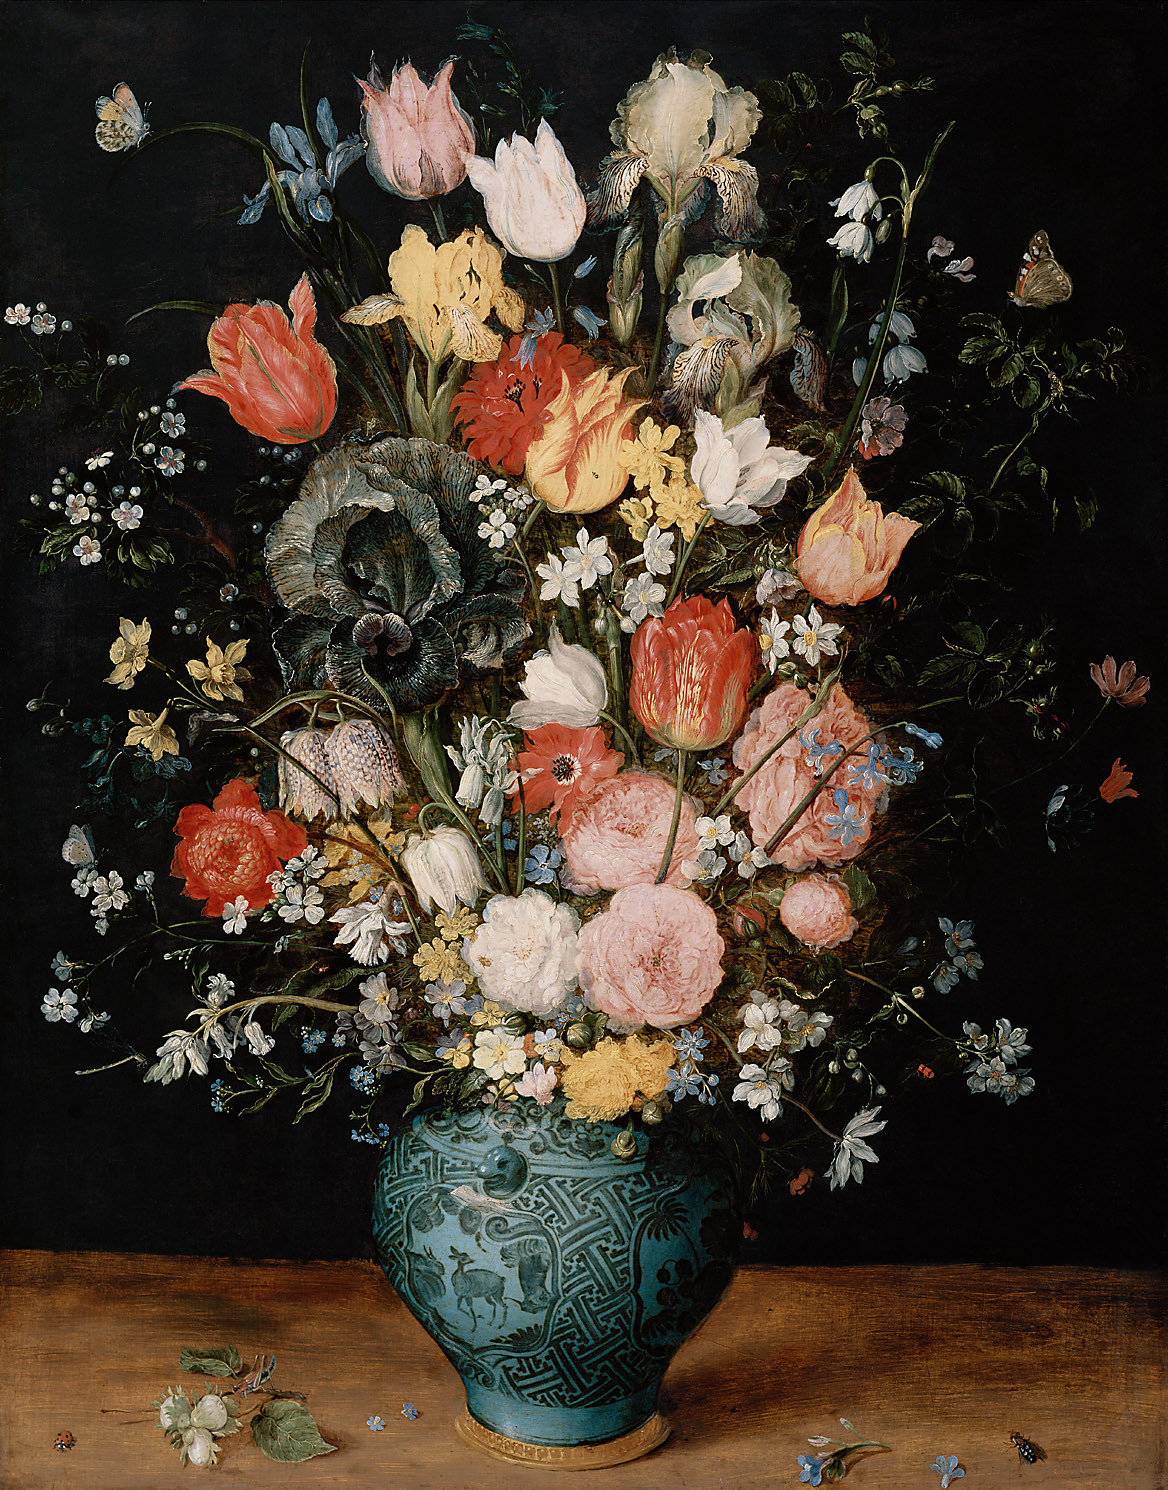 蓝色花瓶里的花束 by 扬 勃鲁盖尔 - 约1608 - 65.8 × 51 cm 艺术史博物馆